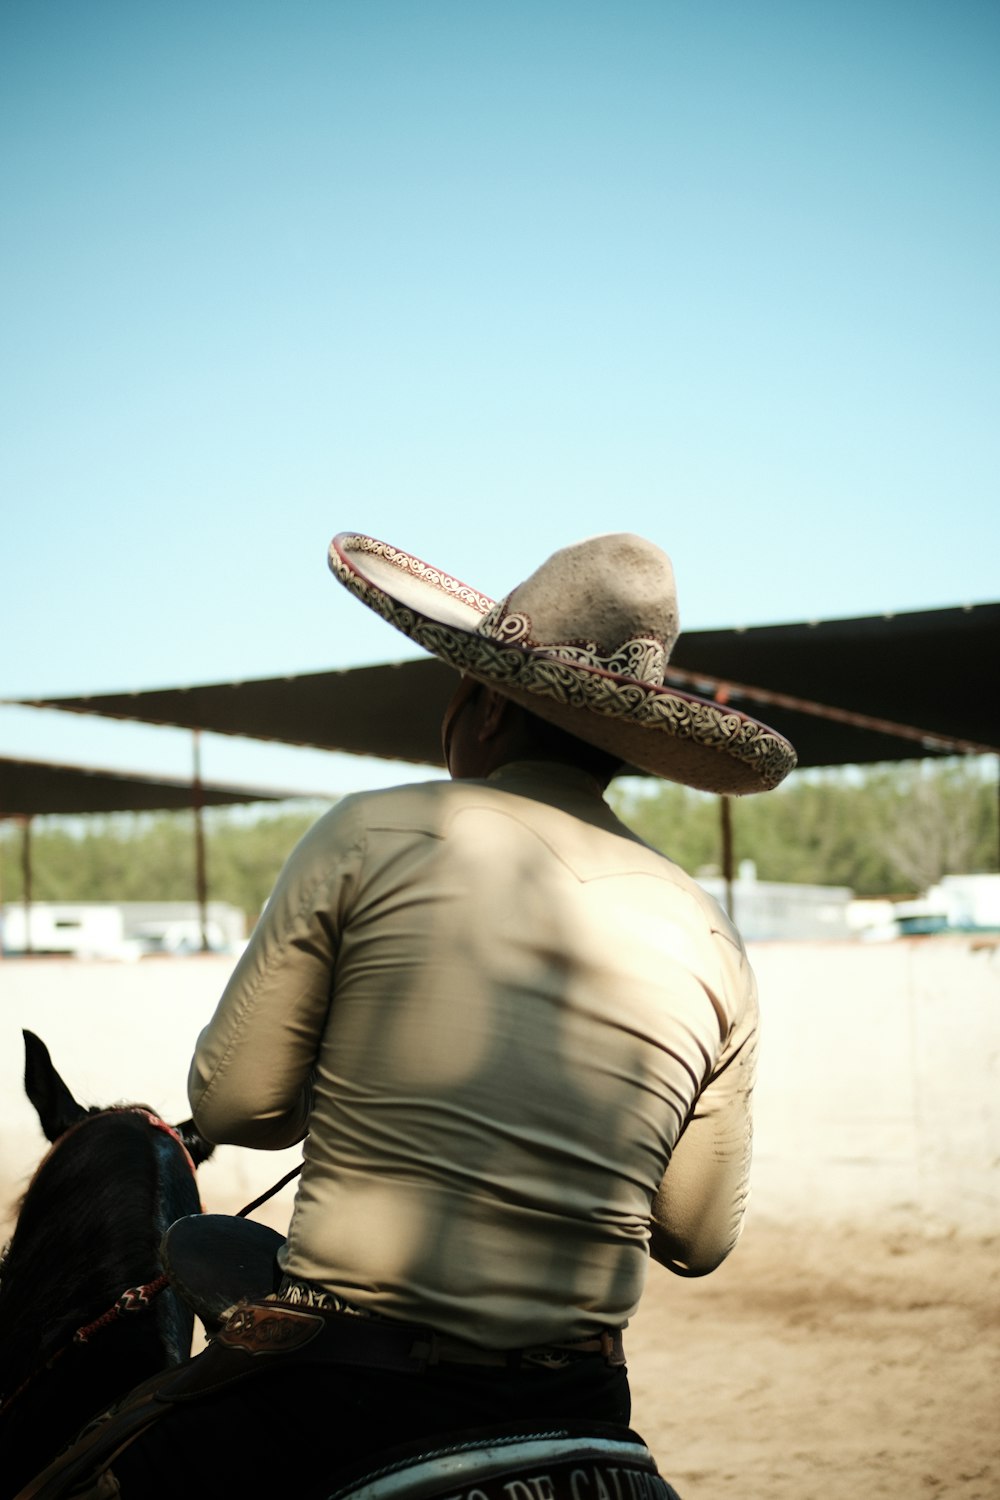 a man riding a horse wearing a sombrero